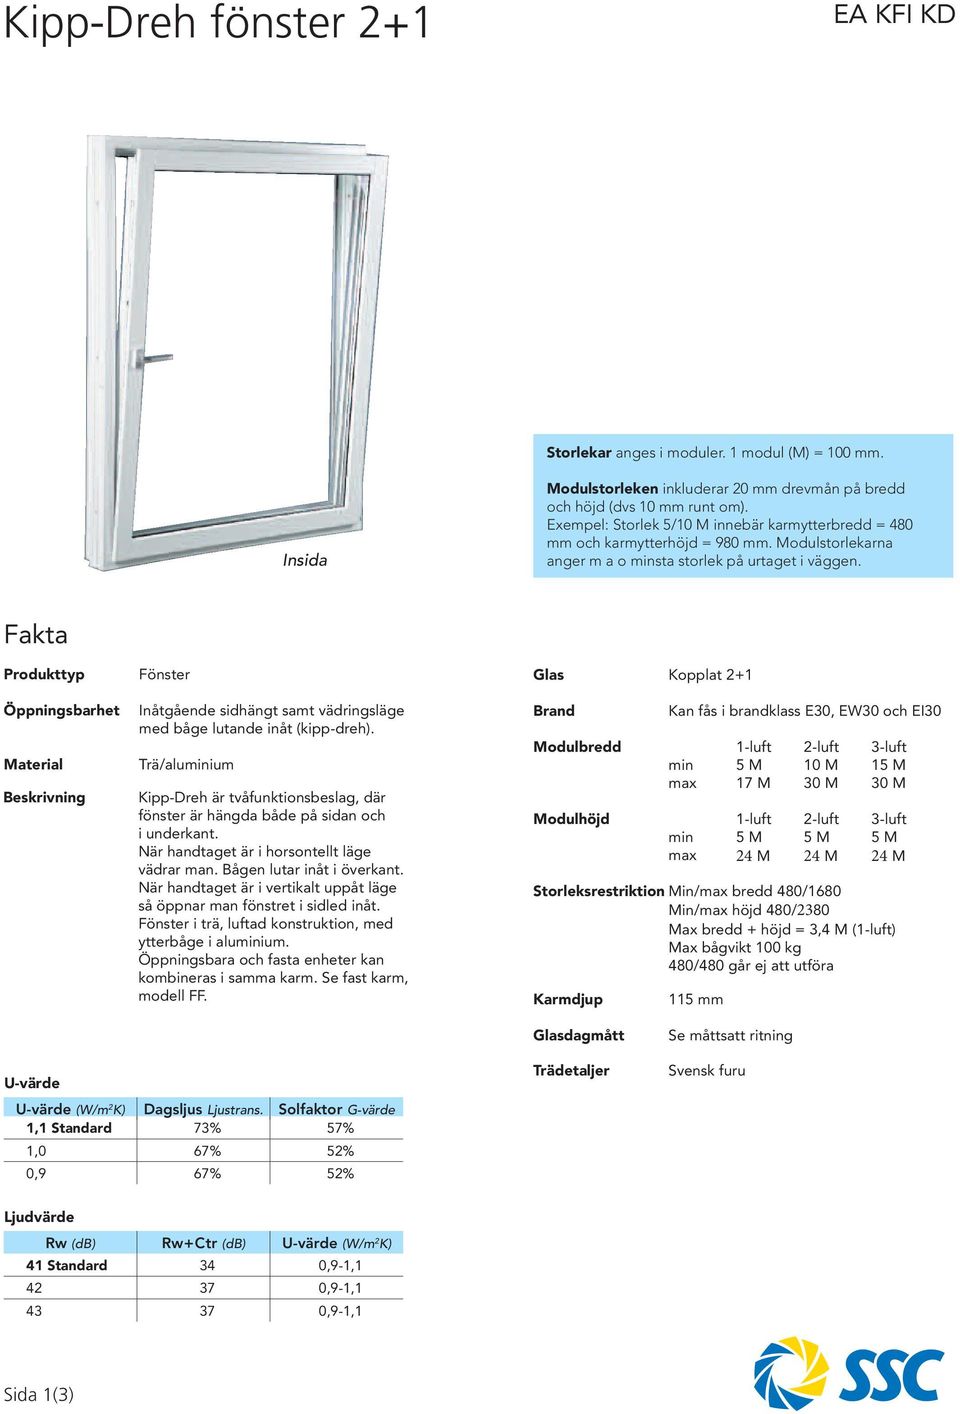 Fakta Produkttyp Öppningsbarhet Material Beskrivning Fönster Inåtgående sidhängt samt vädringsläge med båge lutande inåt (kipp-dreh).